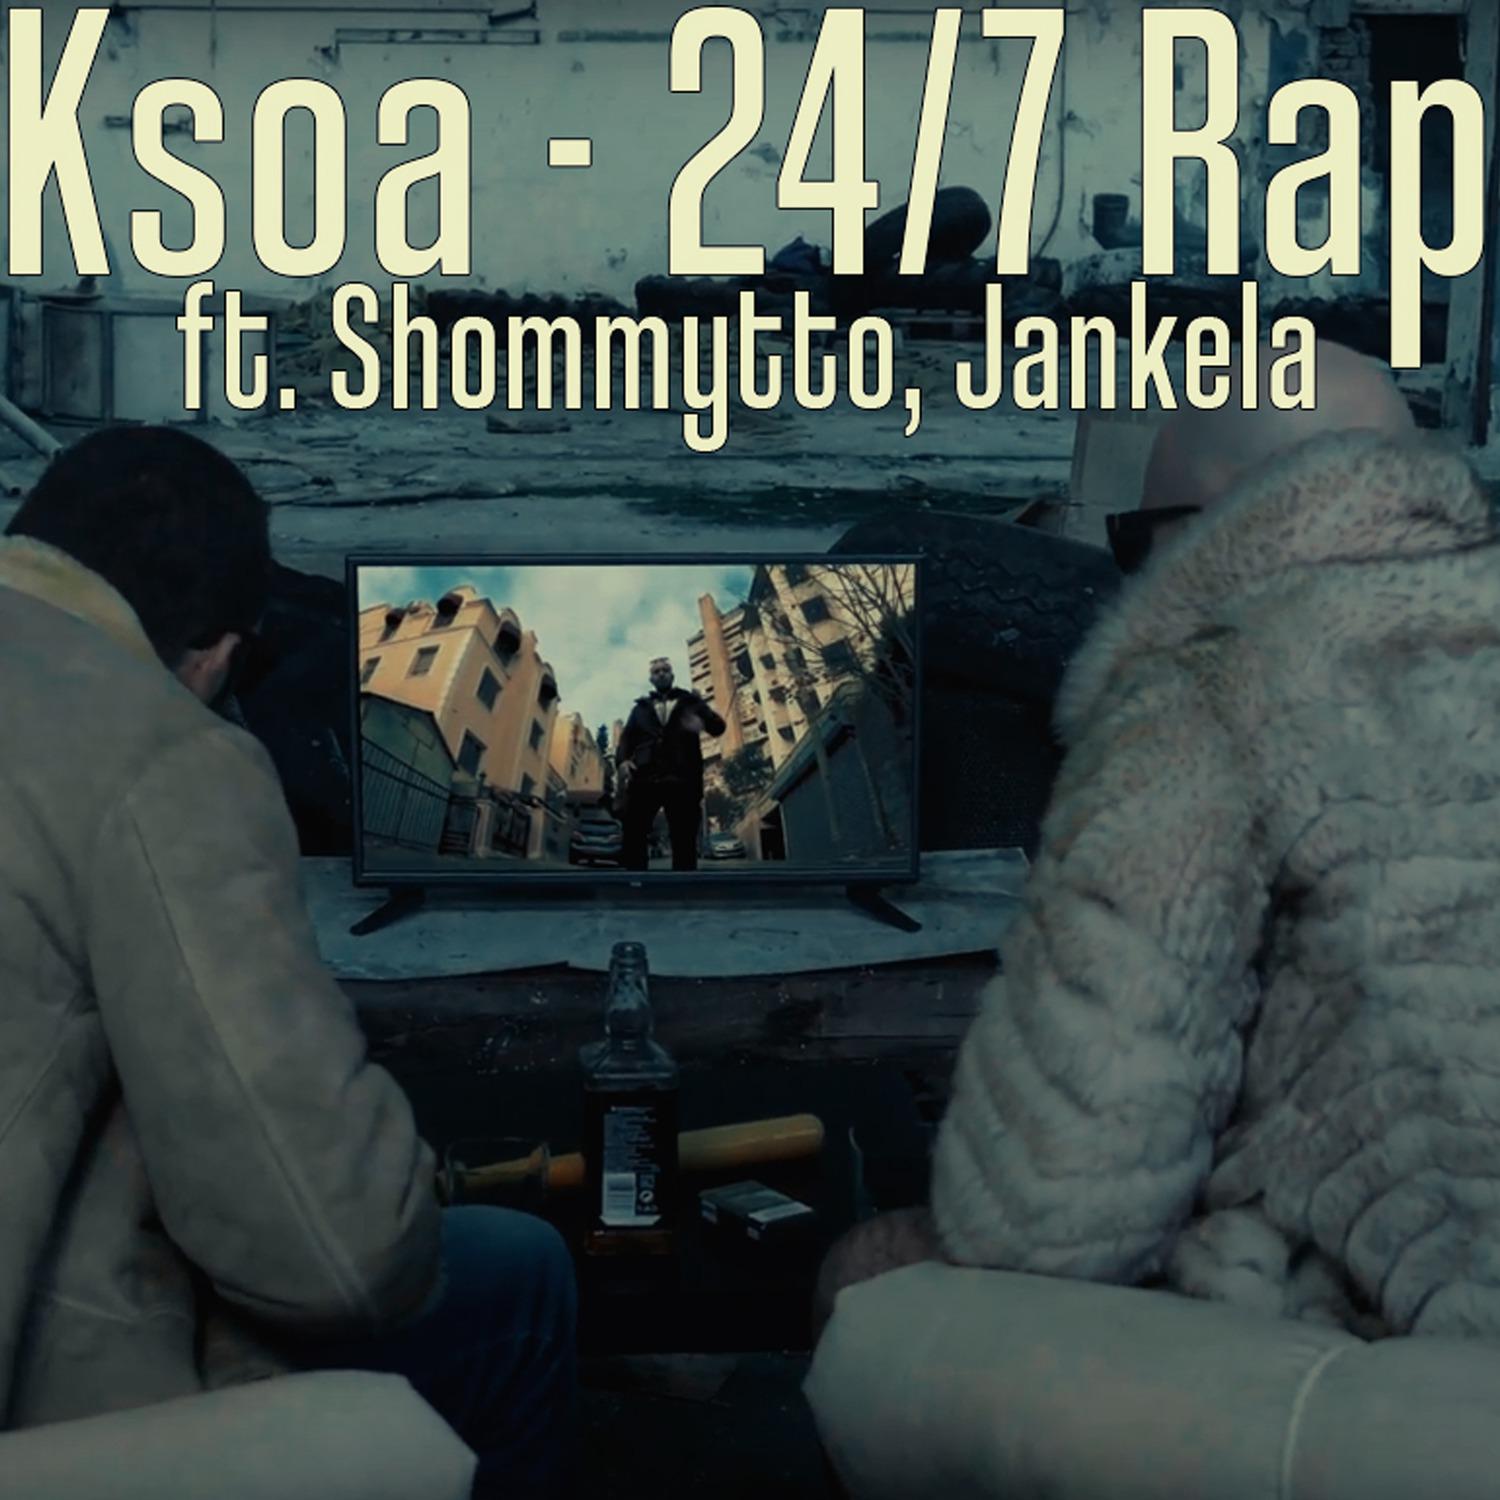 Ksoa - 24/7 Rap